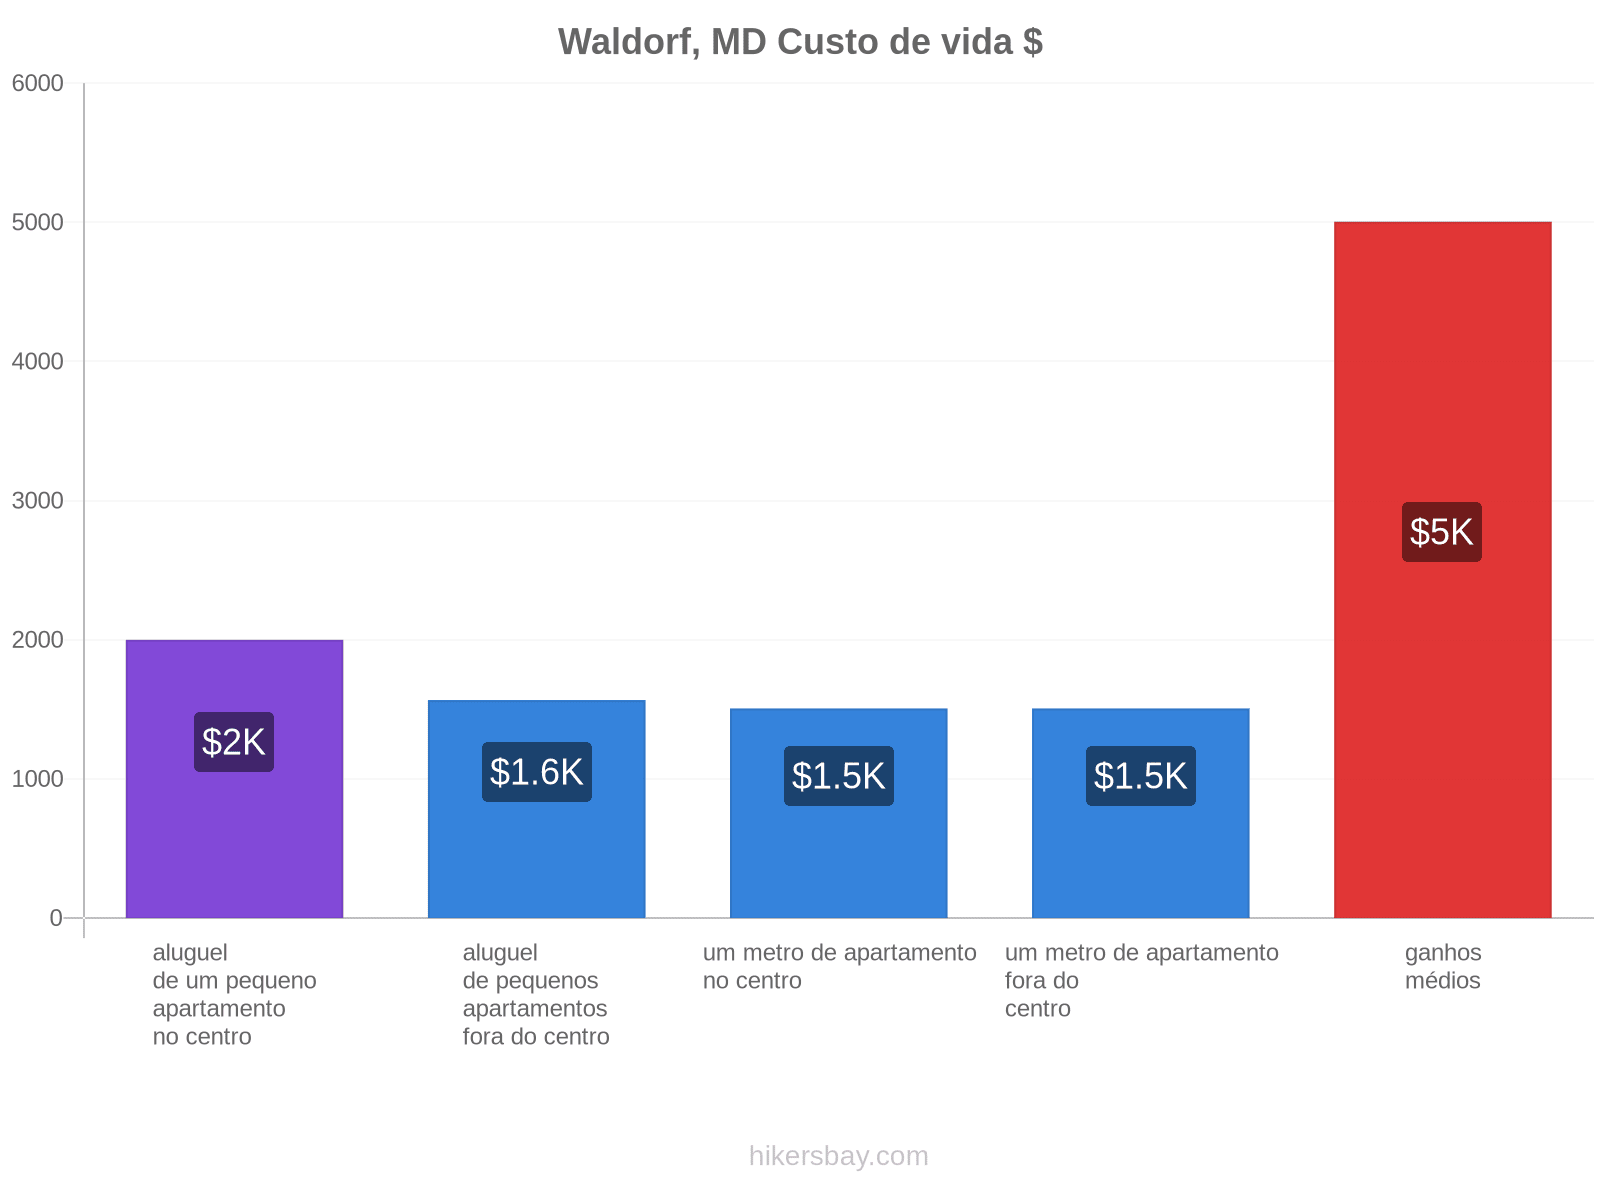 Waldorf, MD custo de vida hikersbay.com